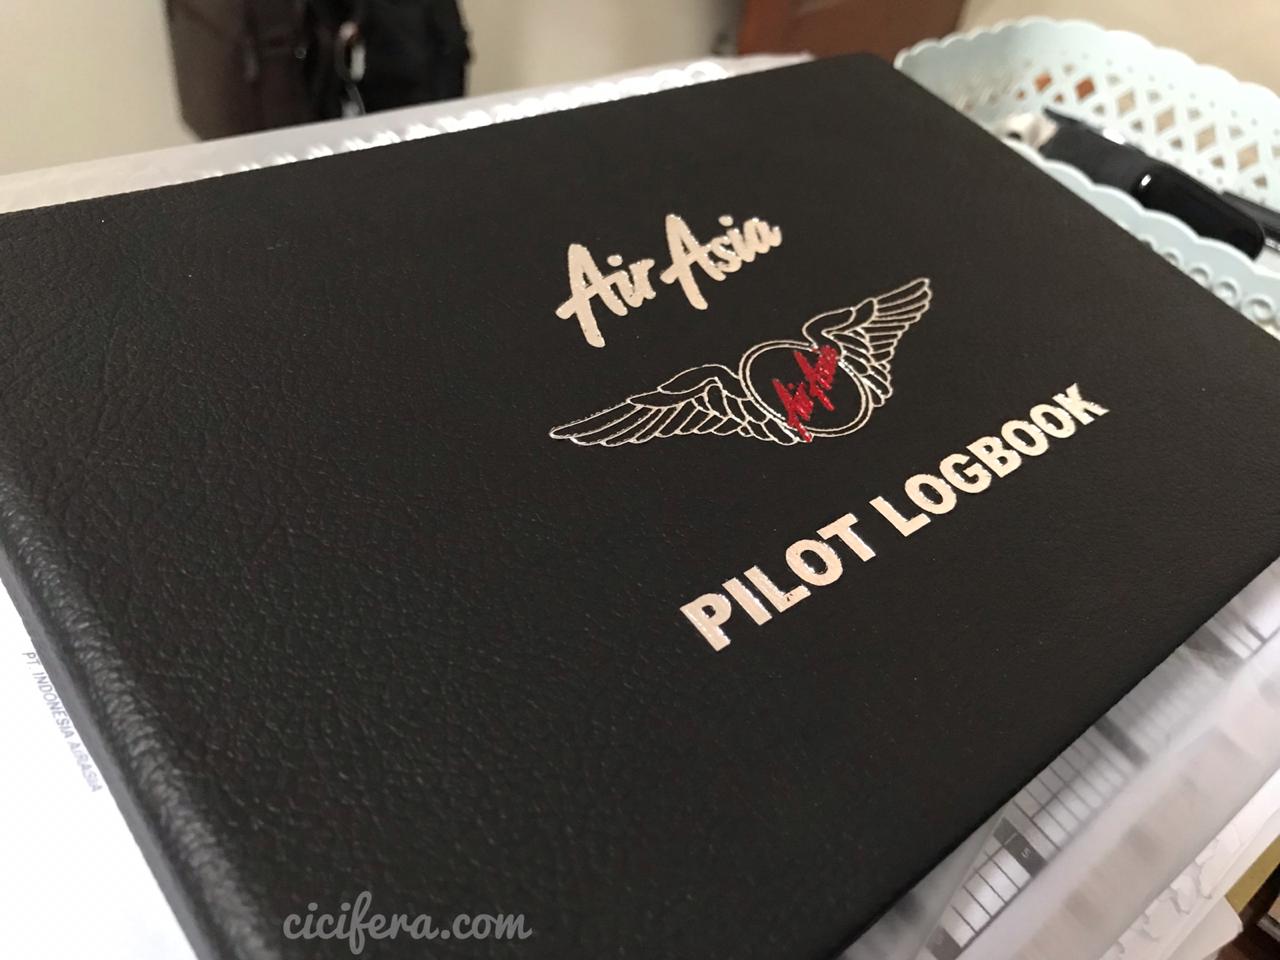 Pilot-Logbook-AirAsia-Cicifera